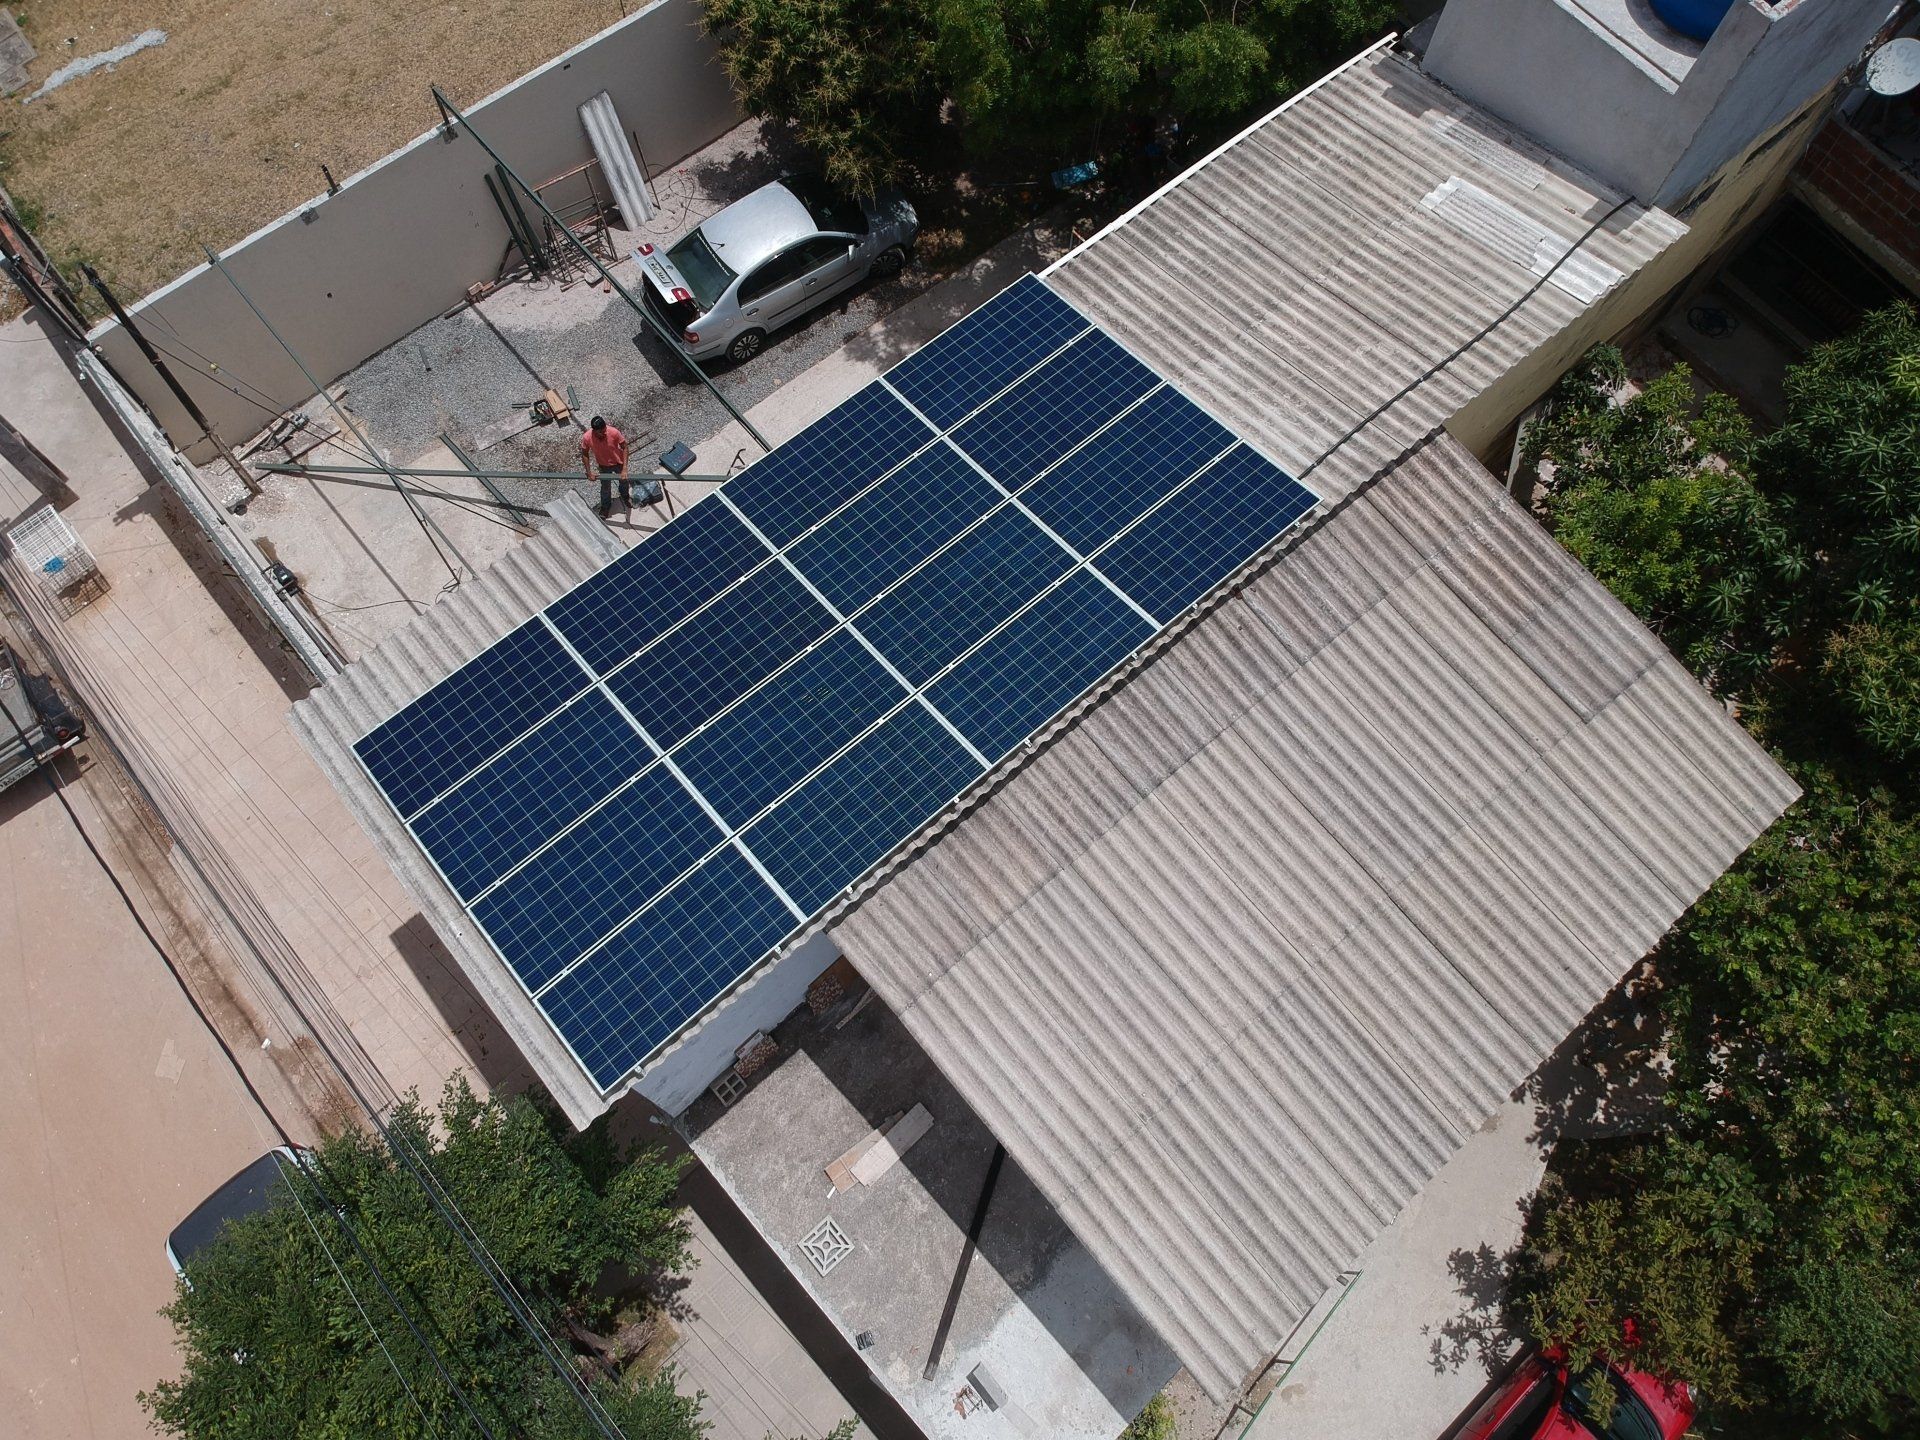 Sistema instalado no bairro de Aguas compridas, Olinda-PE. Composto por 32 módulos Solar Fotovoltaico de potência 335Wp e inversor string. Com plataforma para monitoramento Online.